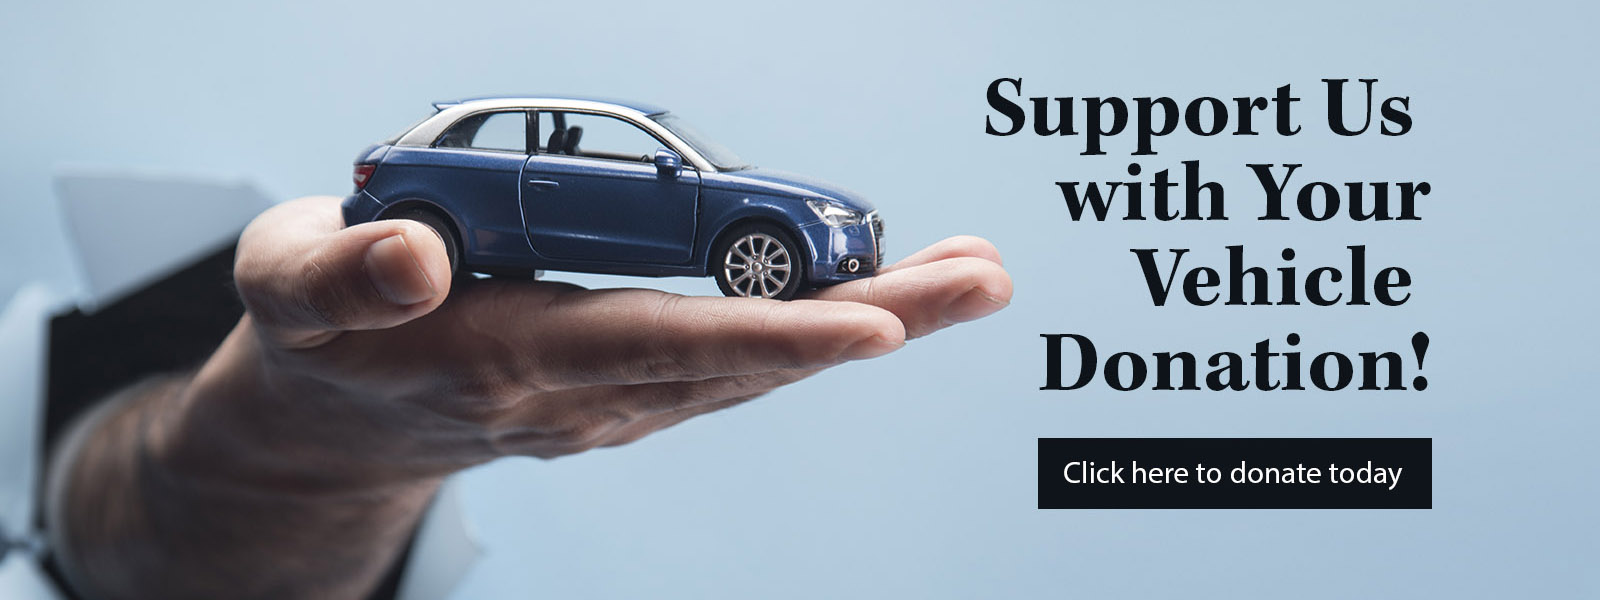 Donate Your Car to Diakon Today!